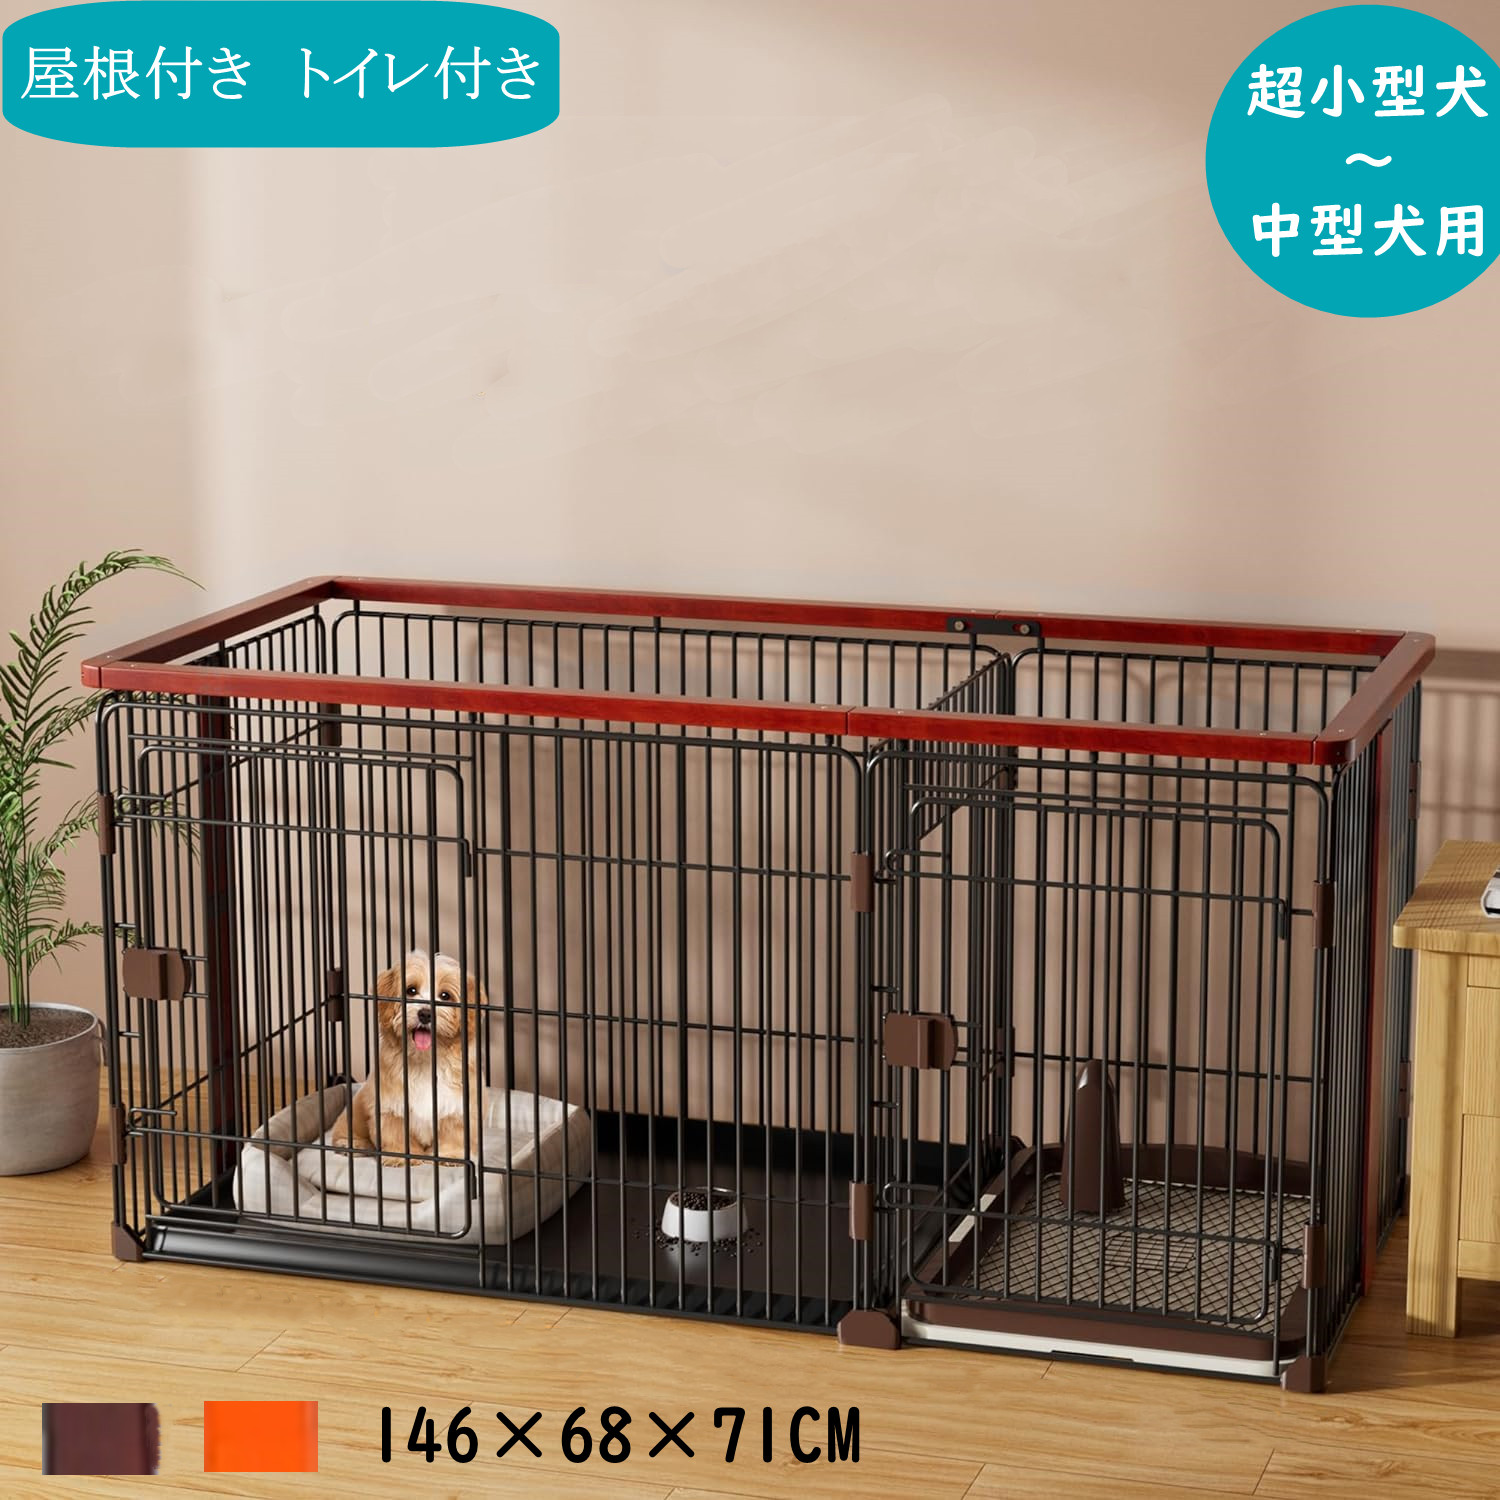 【楽天市場】C10050-1M 犬ケージ インテリアサークル 木製 オーク 